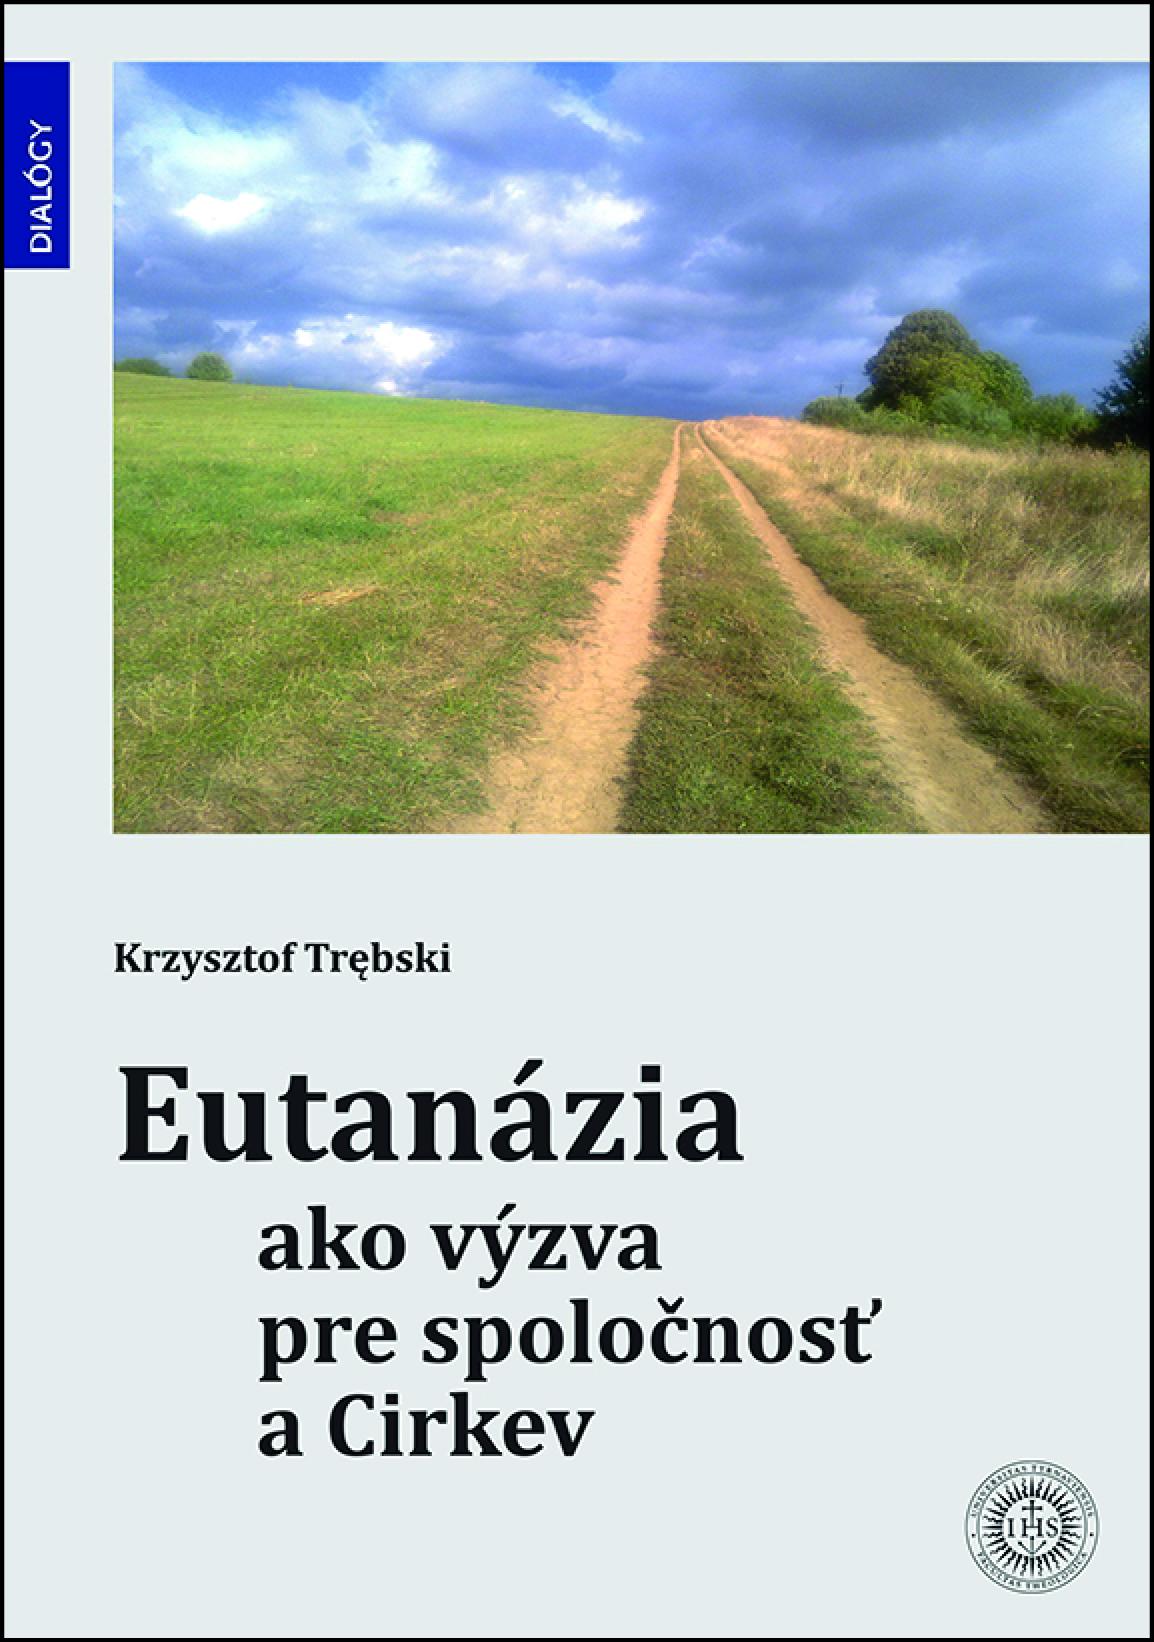 Bratislava, Dobra kniha, eutanazia, titulka